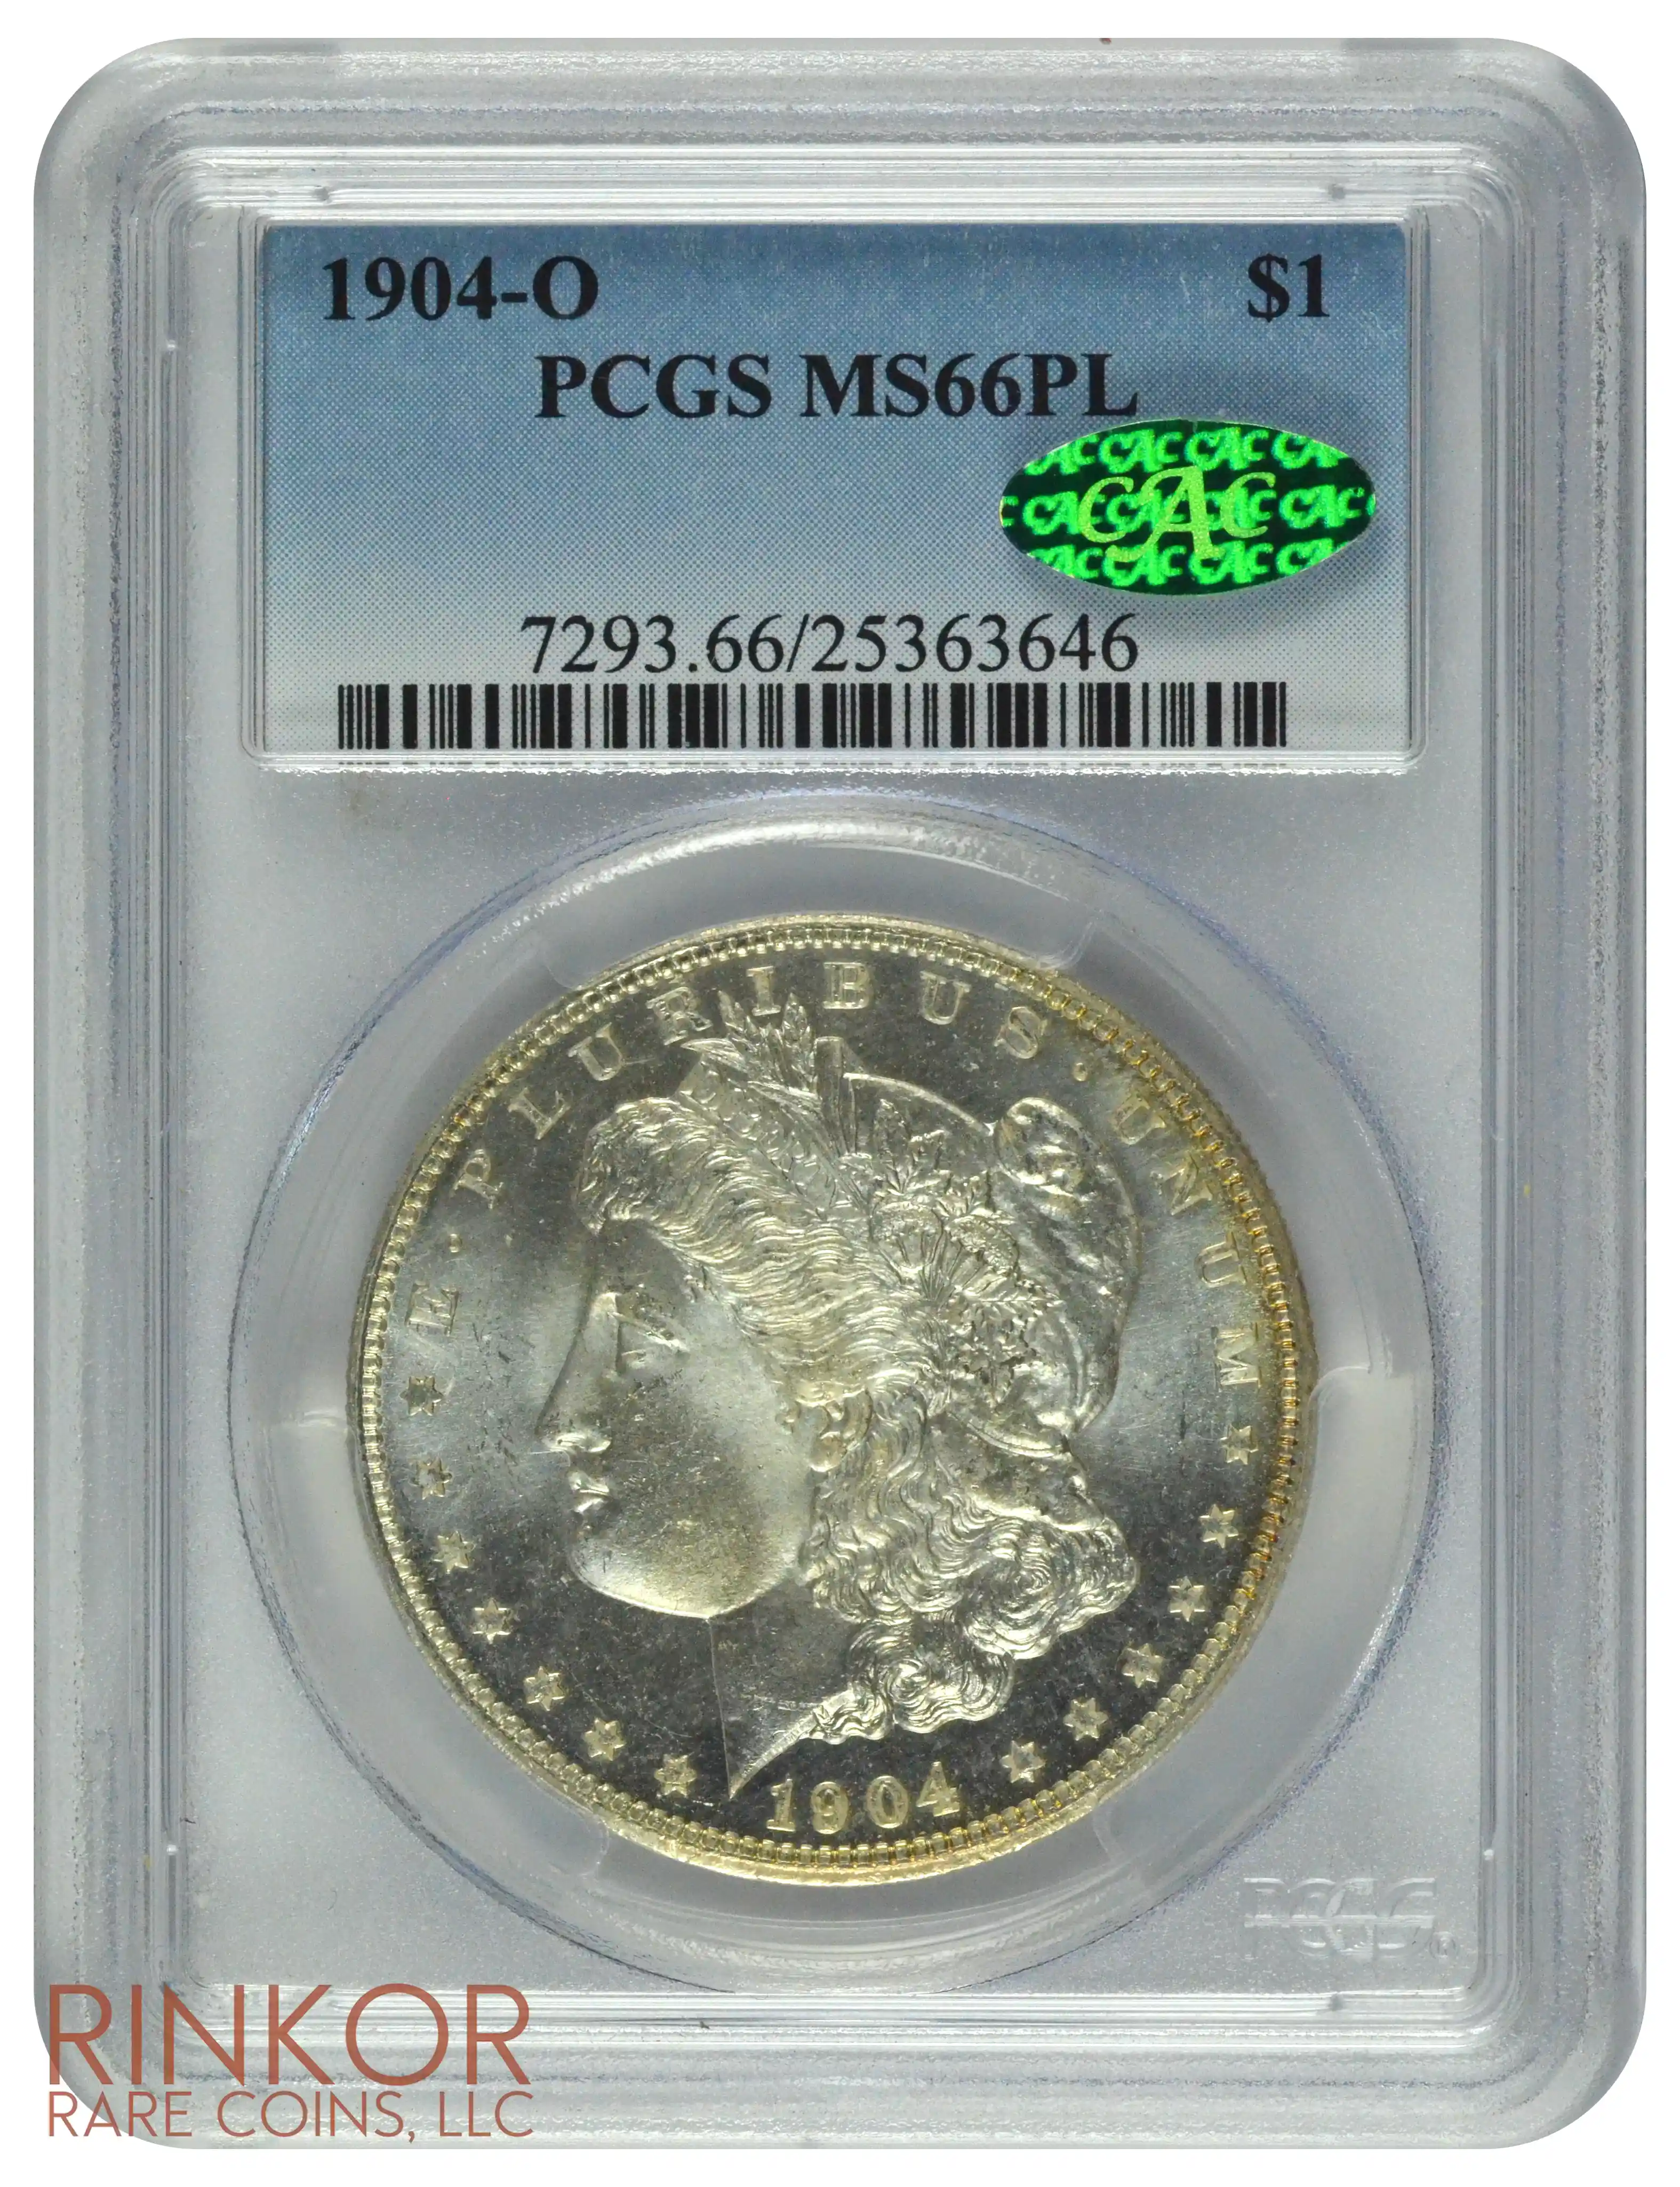 1904-O $1 PCGS MS 66 PL CAC